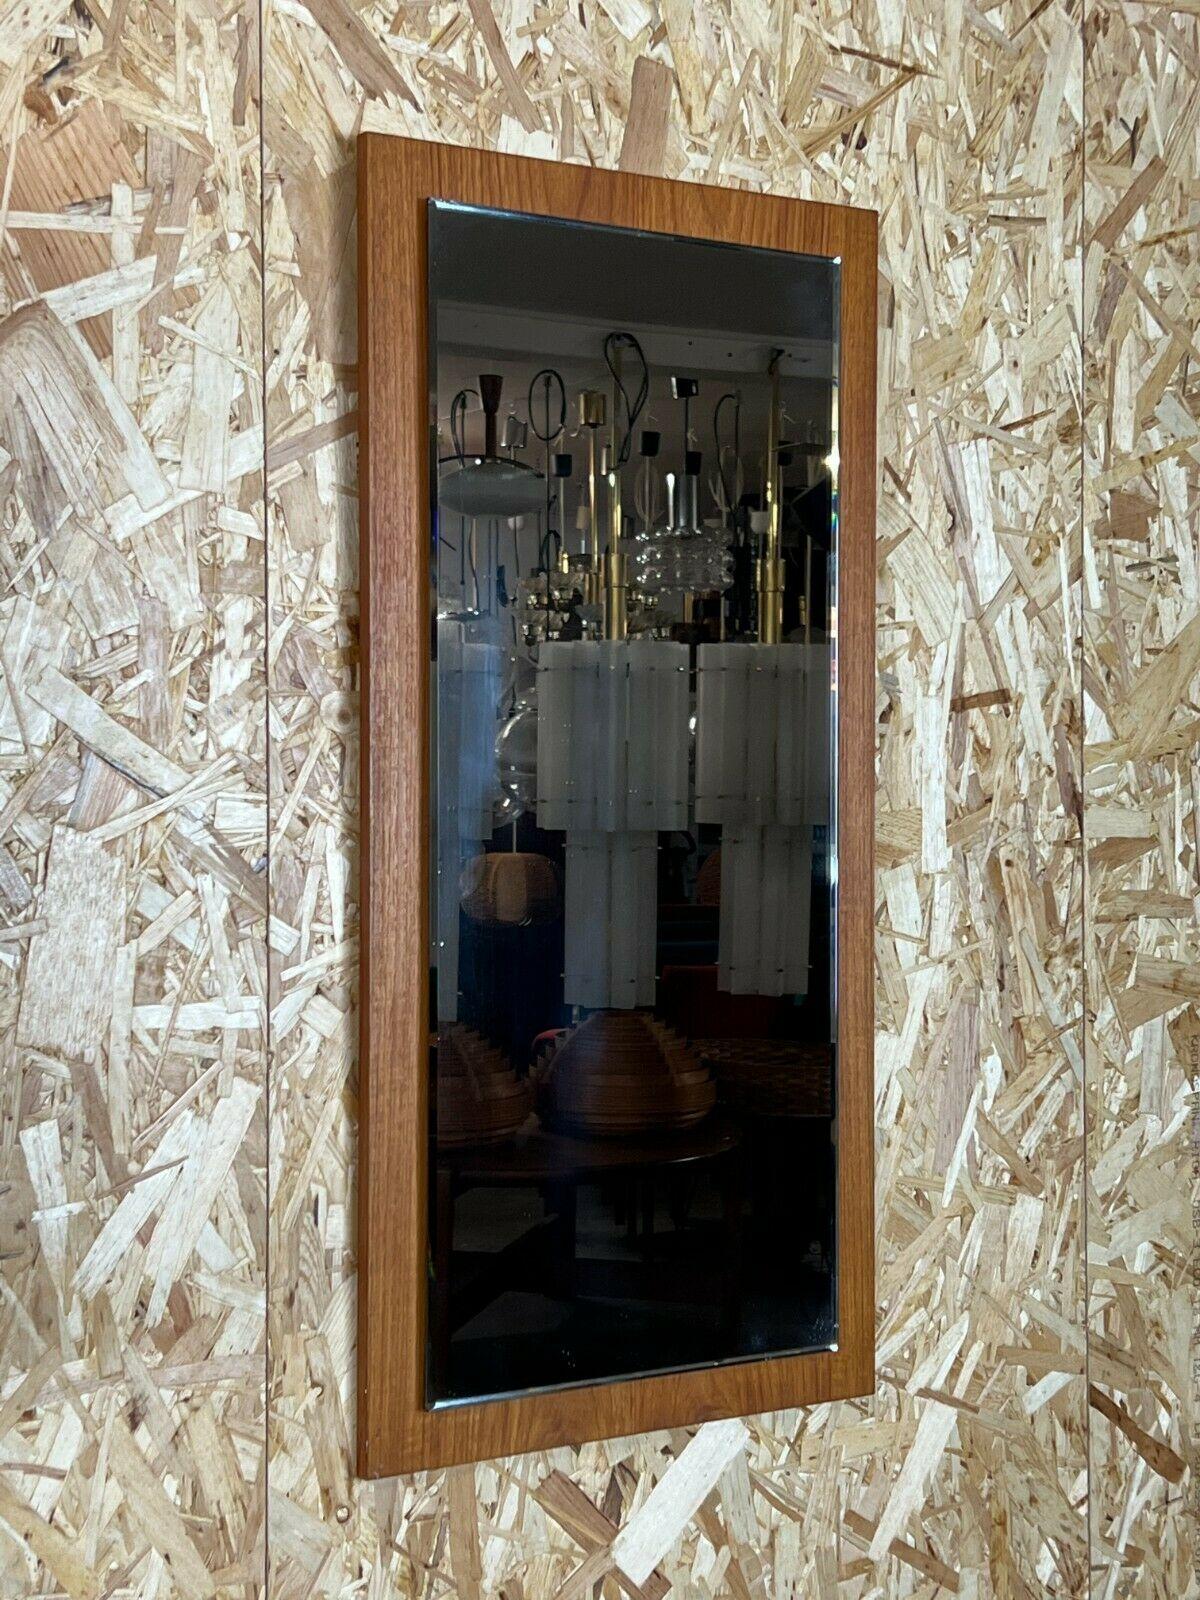 60s 70s Teck miroir miroir mural miroir design moderne danois Danemark 60s

Objet : miroir mural

Fabricant :

État : bon

Âge : environ 1960-1970

Dimensions :

77cm x 37cm x 2.5cm

Autres notes :

Les photos font partie de la